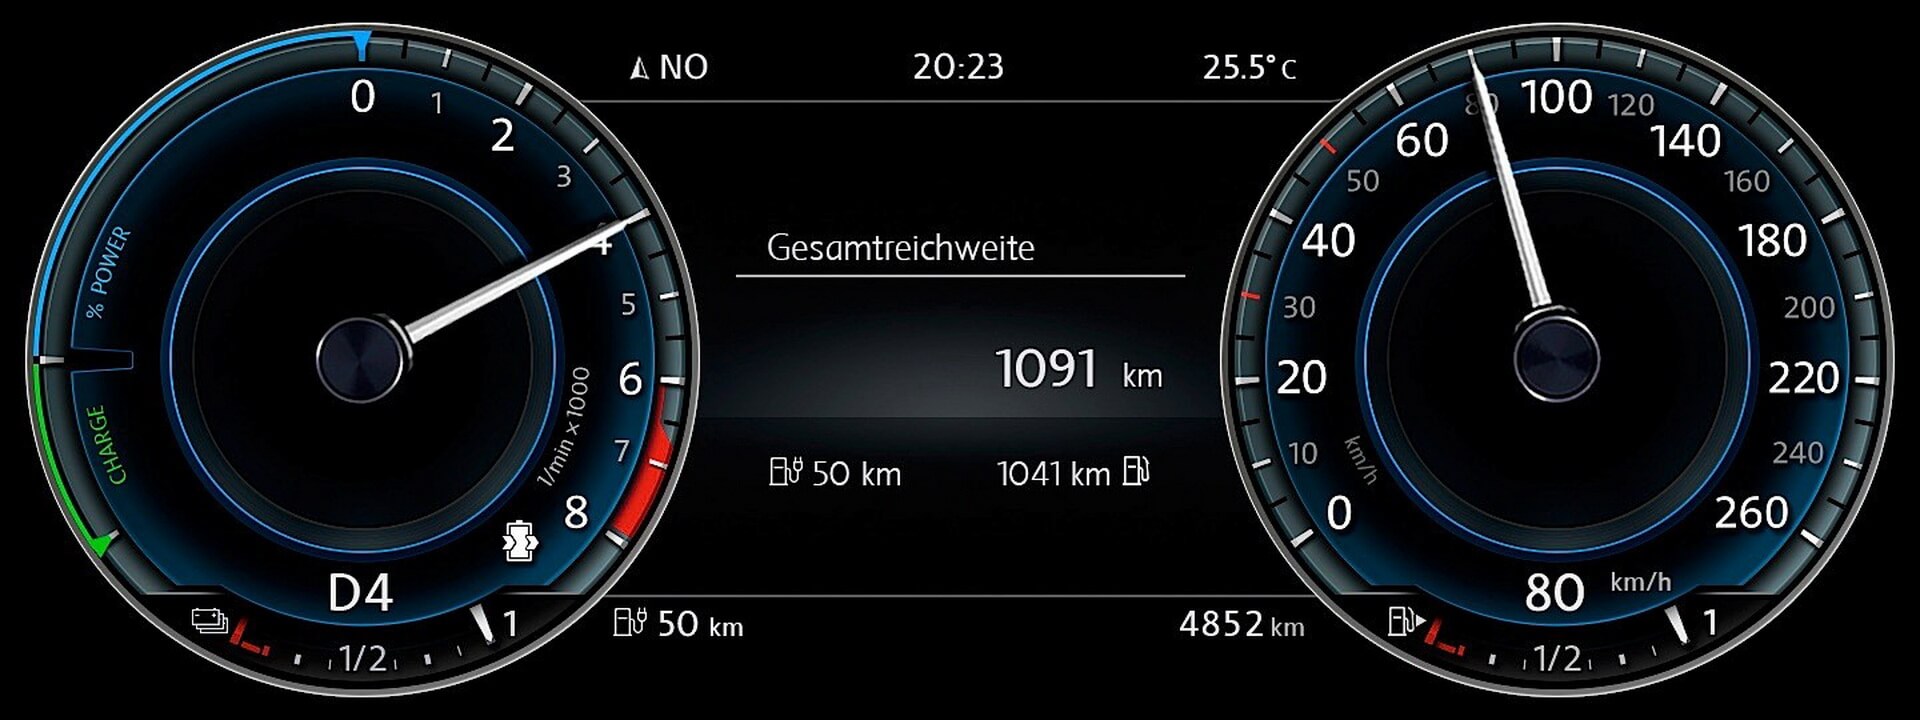 Цифровая панель приборов Volkswagen Passat GTE